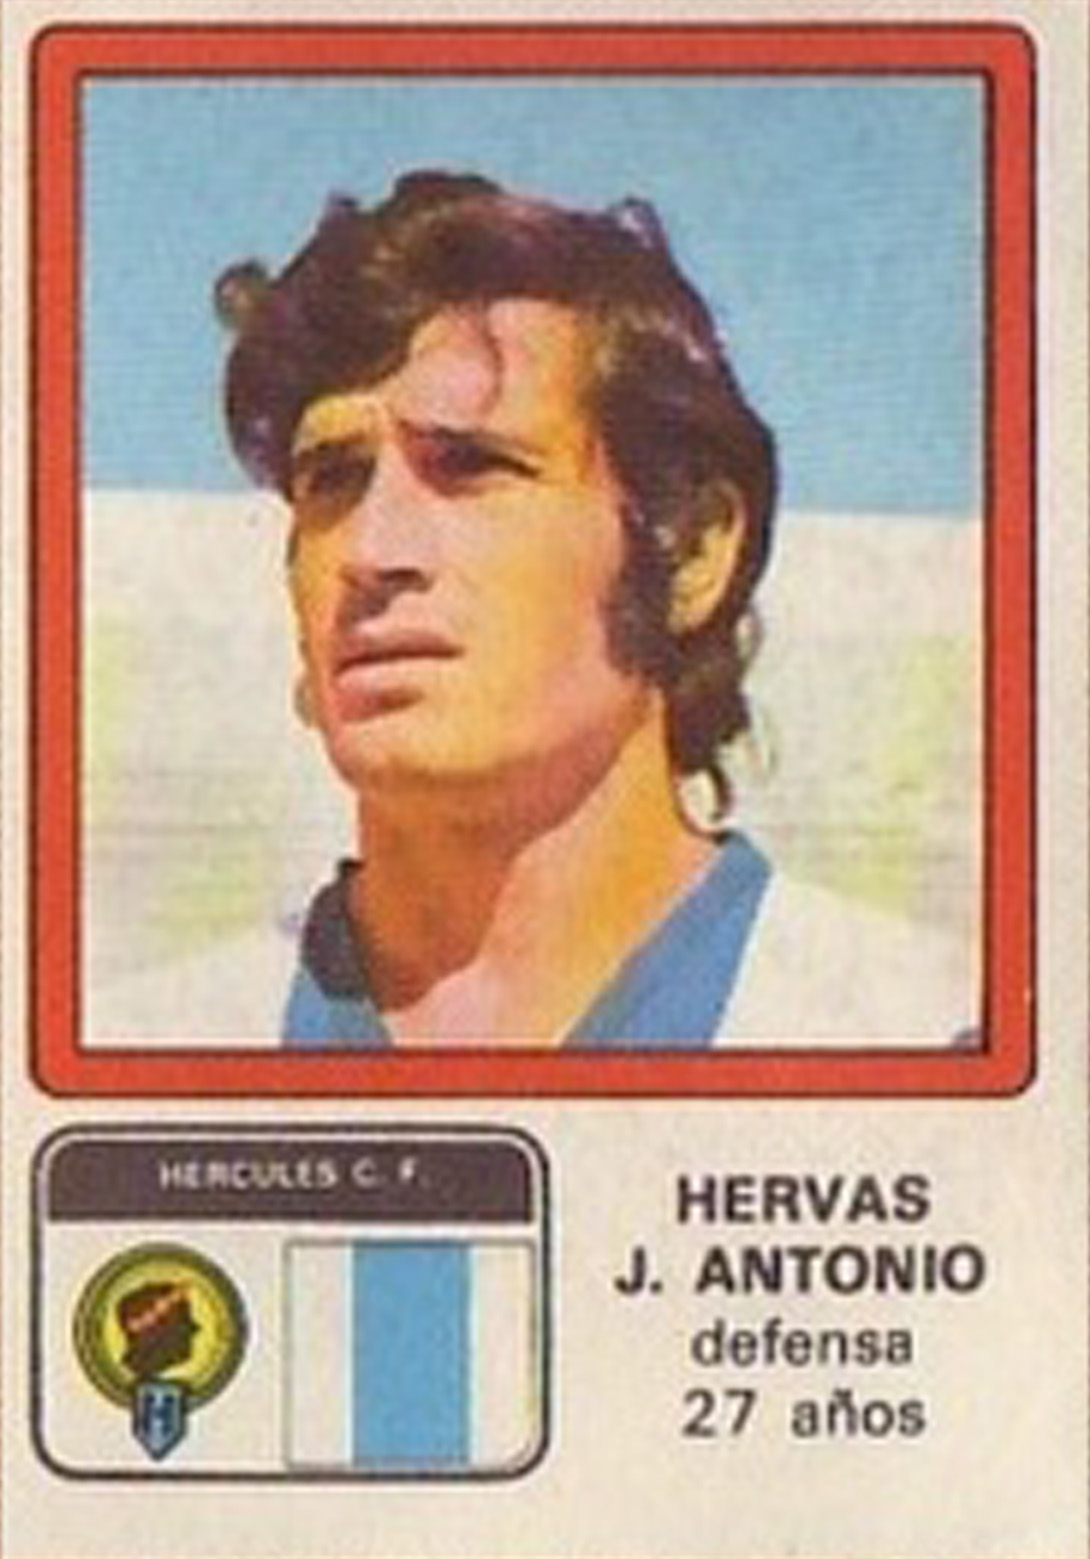 Liga 1976-77. José Antonio (Hércules C.F.) Ediciones Vulcano. 📸: Grupo de Facebook Nuestros álbumes de cromos.